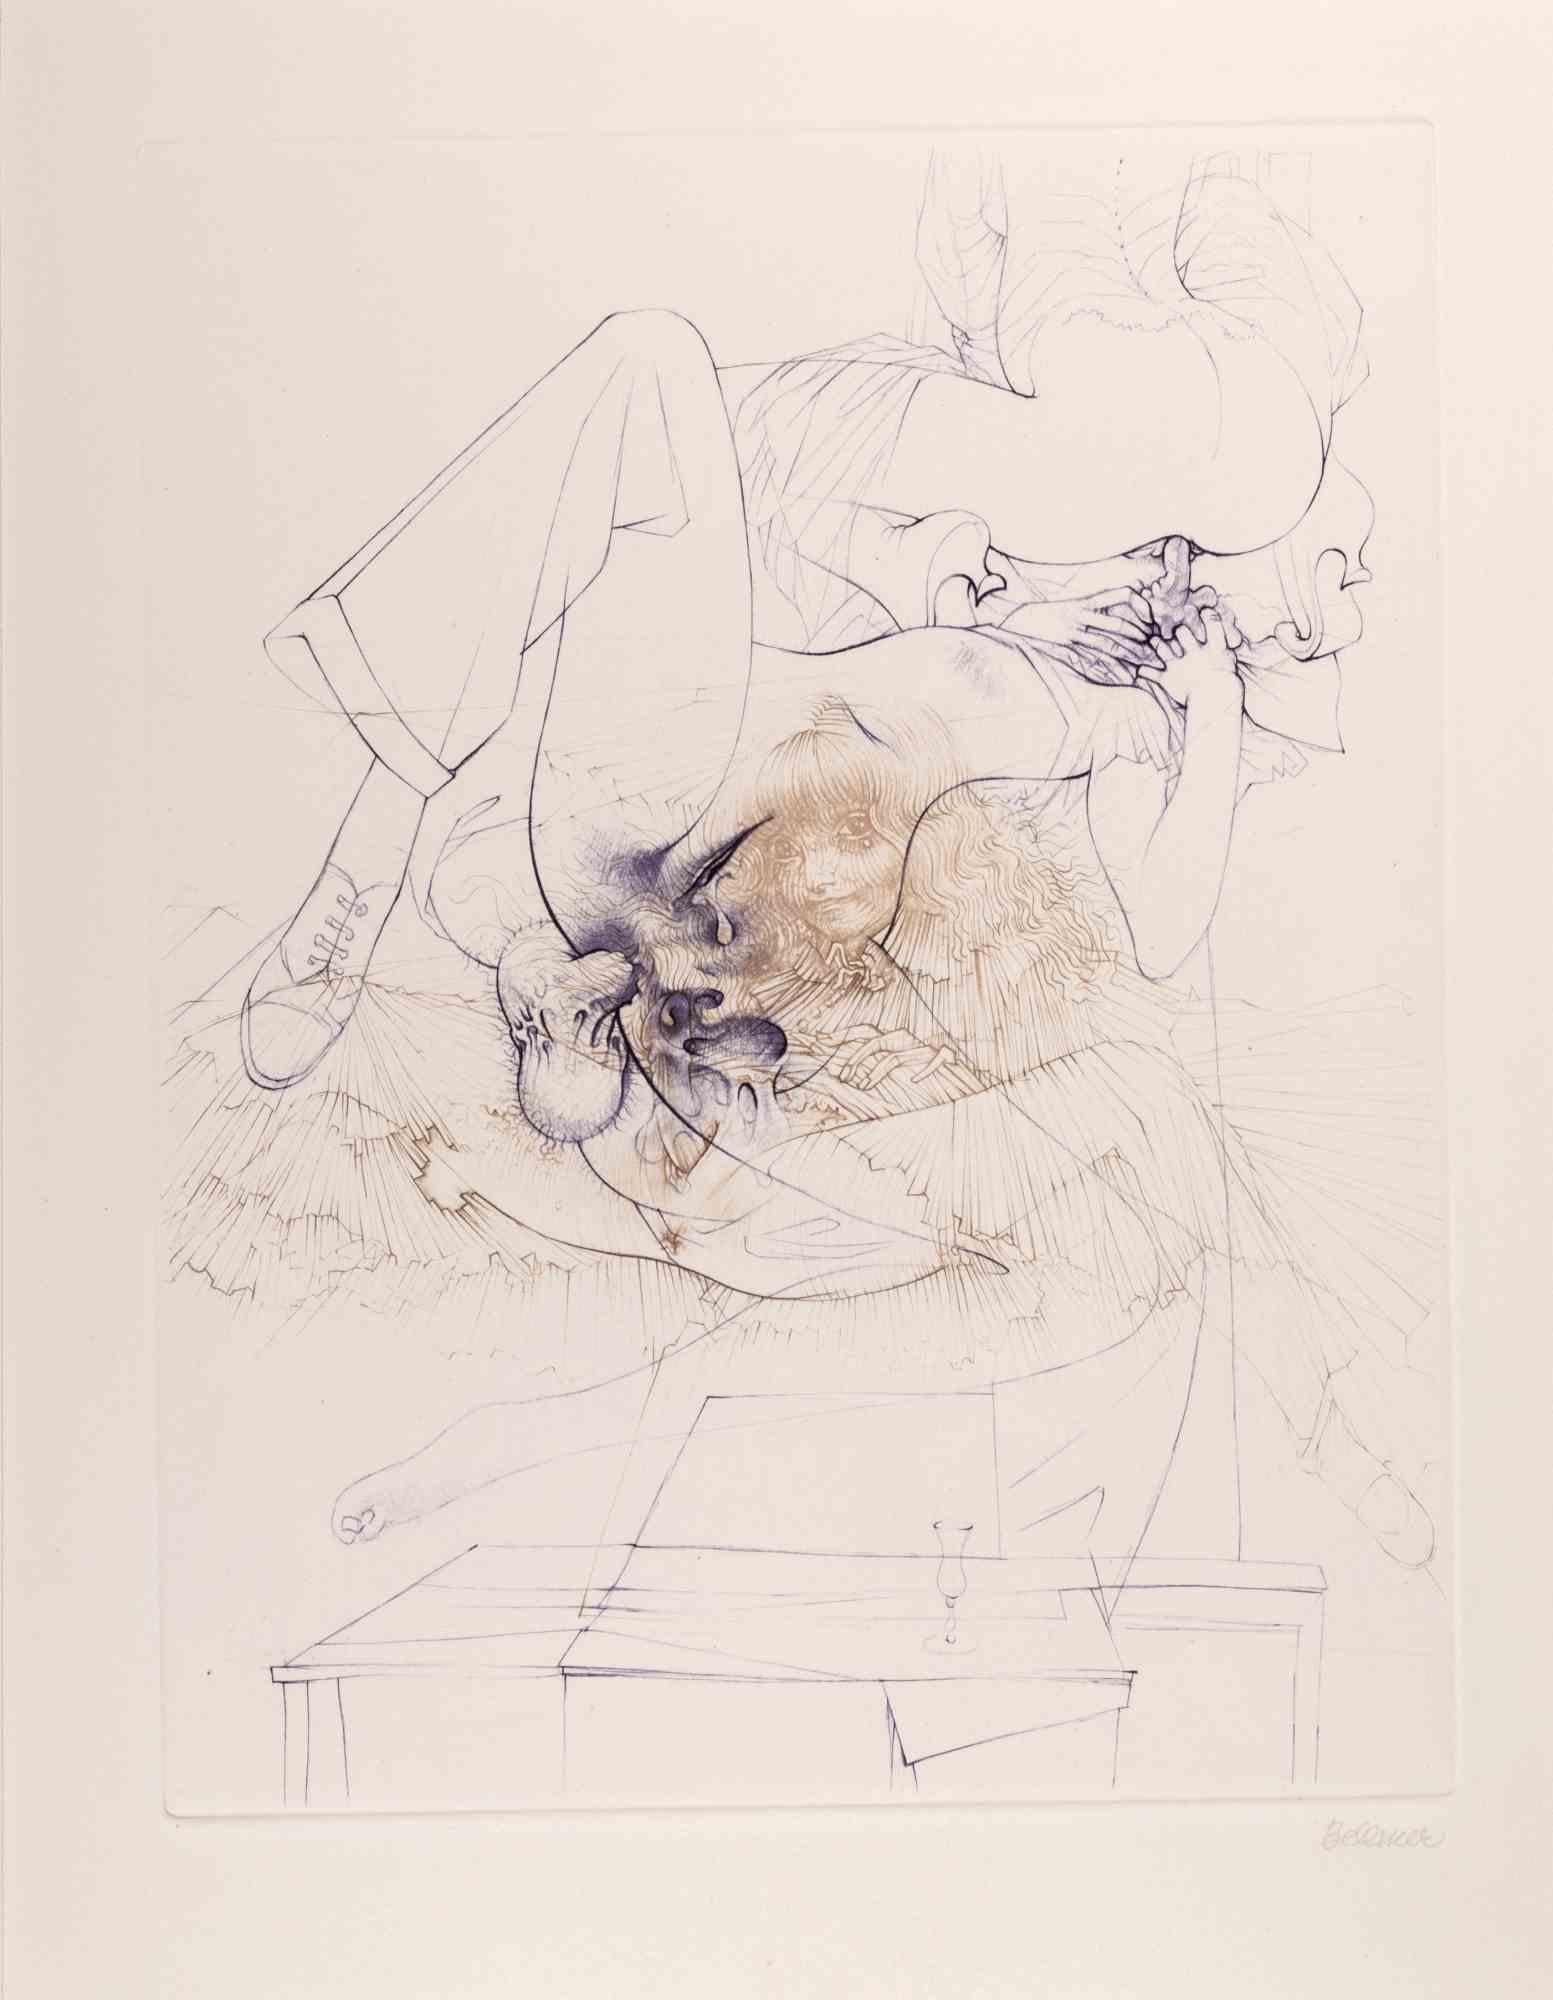 Les 120 Journées de Sodome ist ein zeitgenössisches Kunstwerk von Hans Bellmer.

Handsigniert. Aus der Mappe "Petit Traité de Morale", Paris, Editions Georges Visat, 1968.

Kopie auf Vélin d'Arches aus der zusätzlichen Suite. Beinhaltet